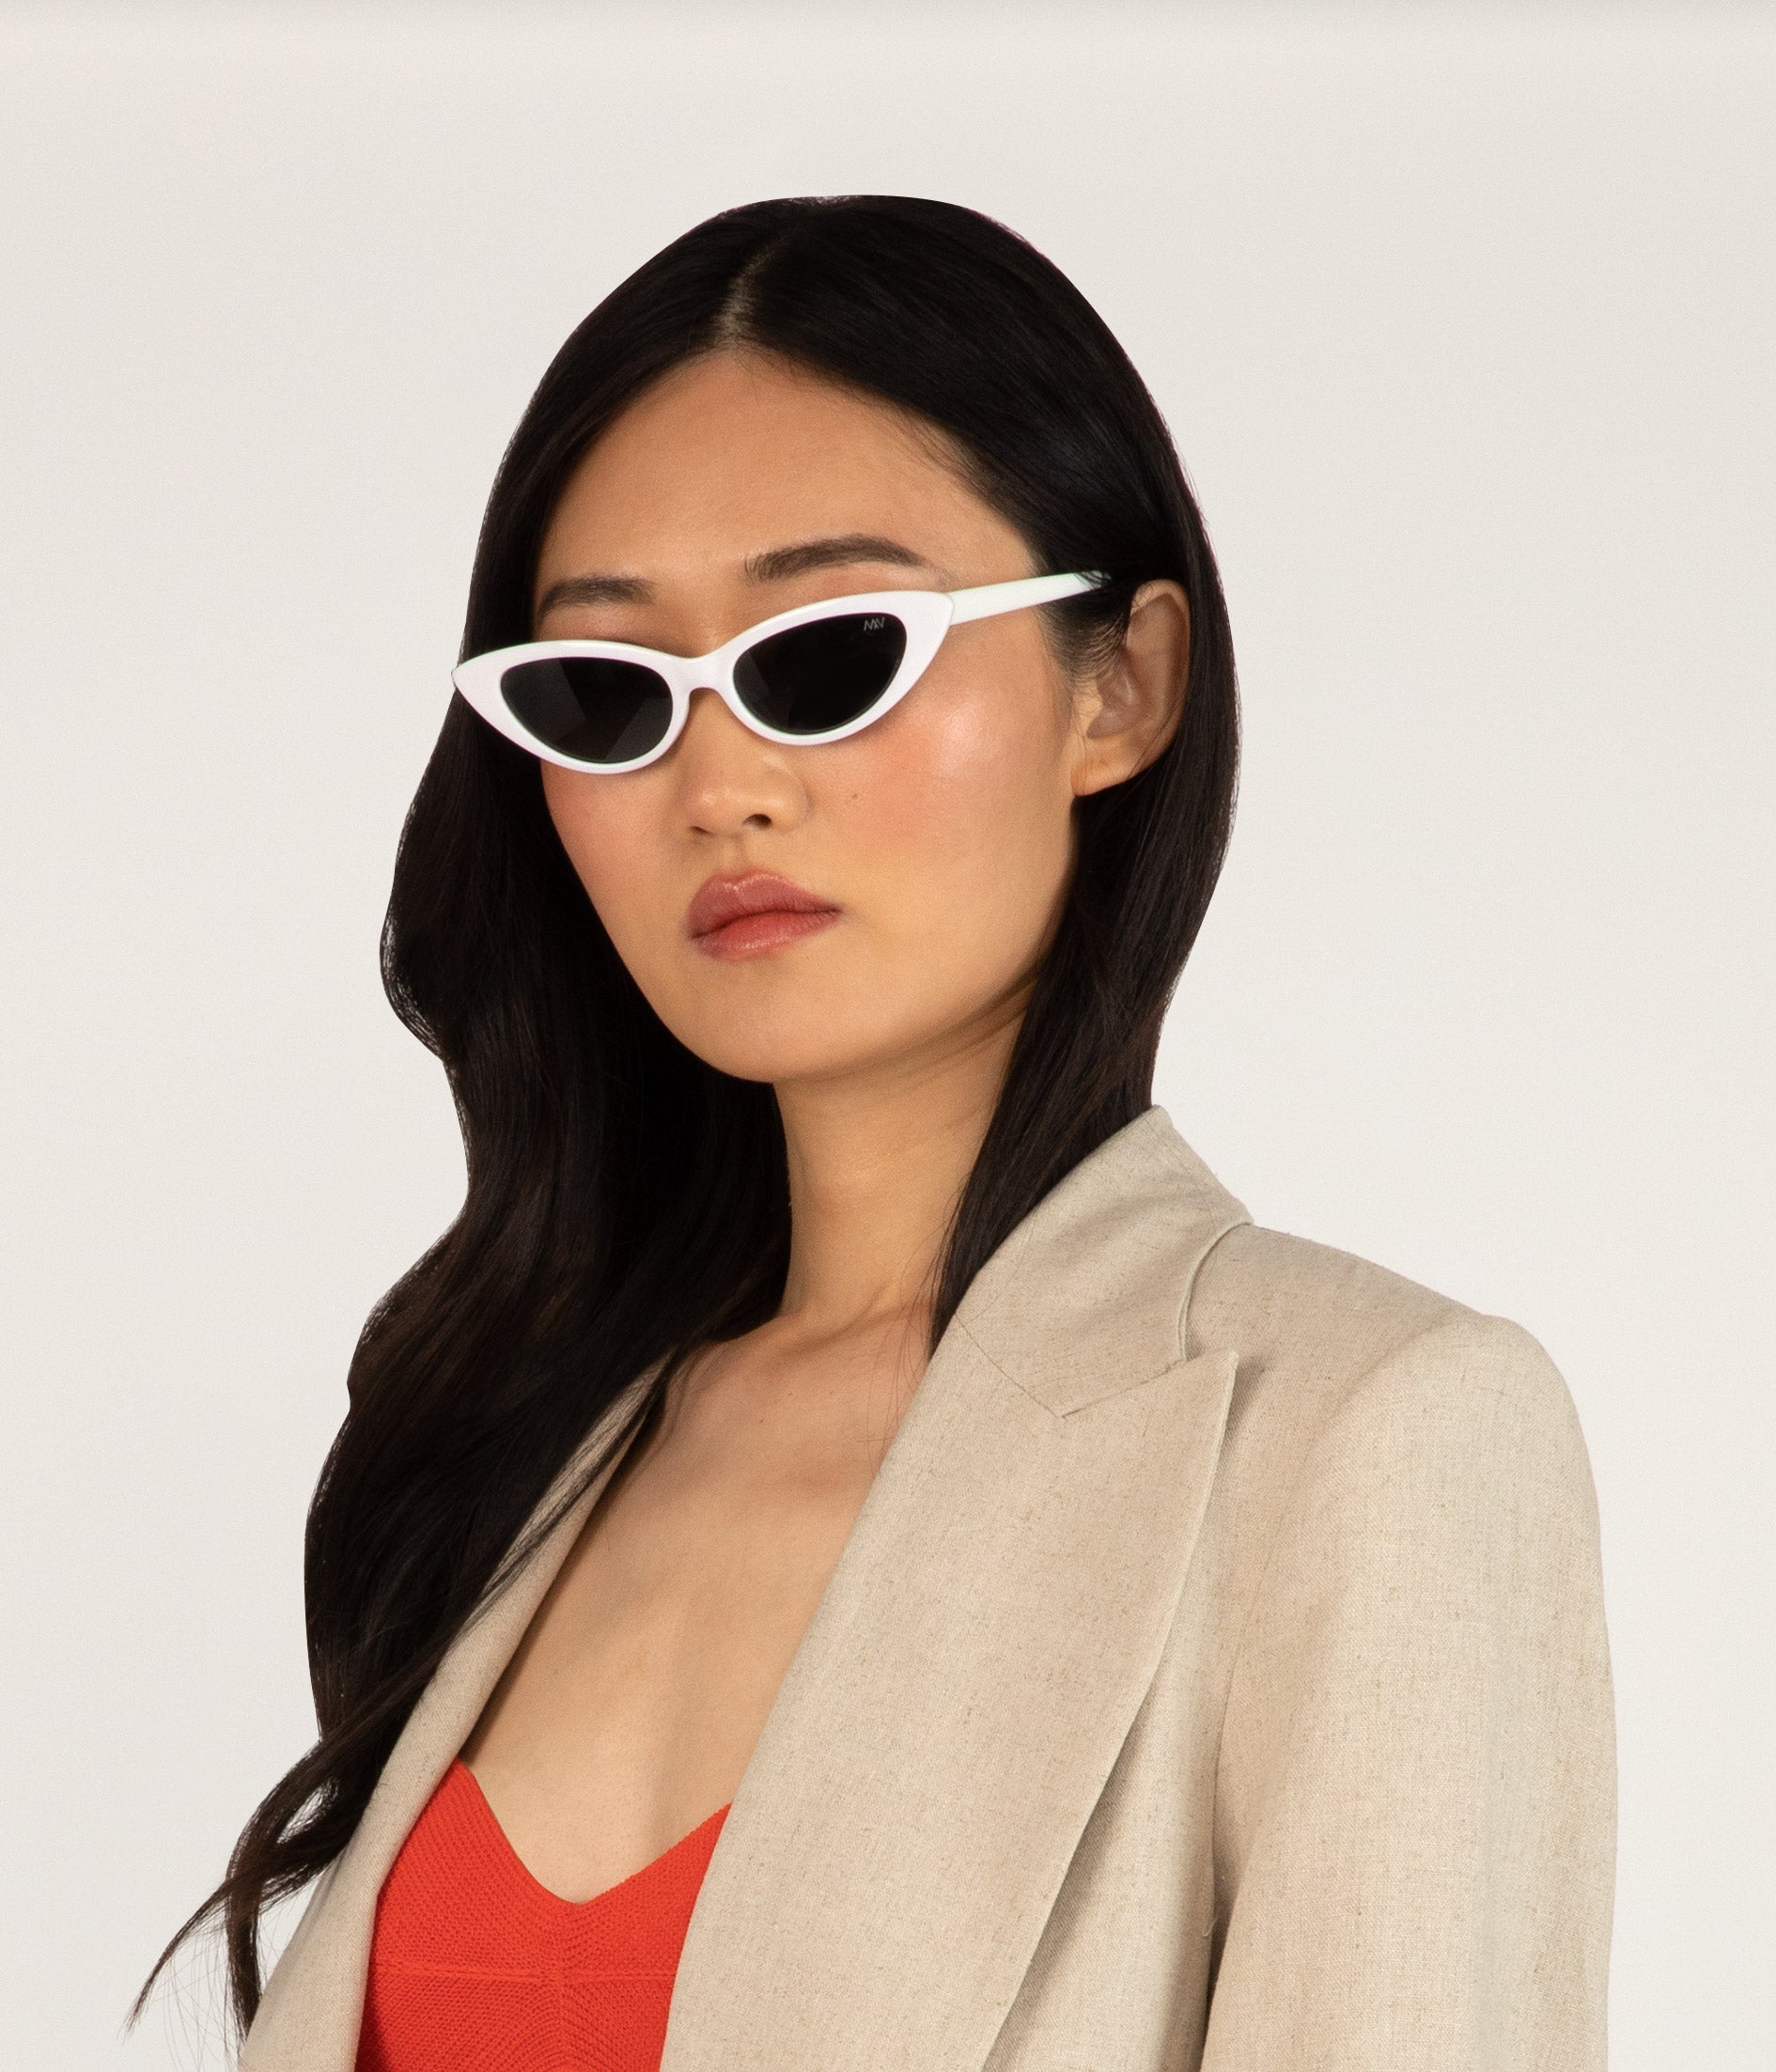 ELSA Cat-Eye Sunglasses | Color: White - variant::white